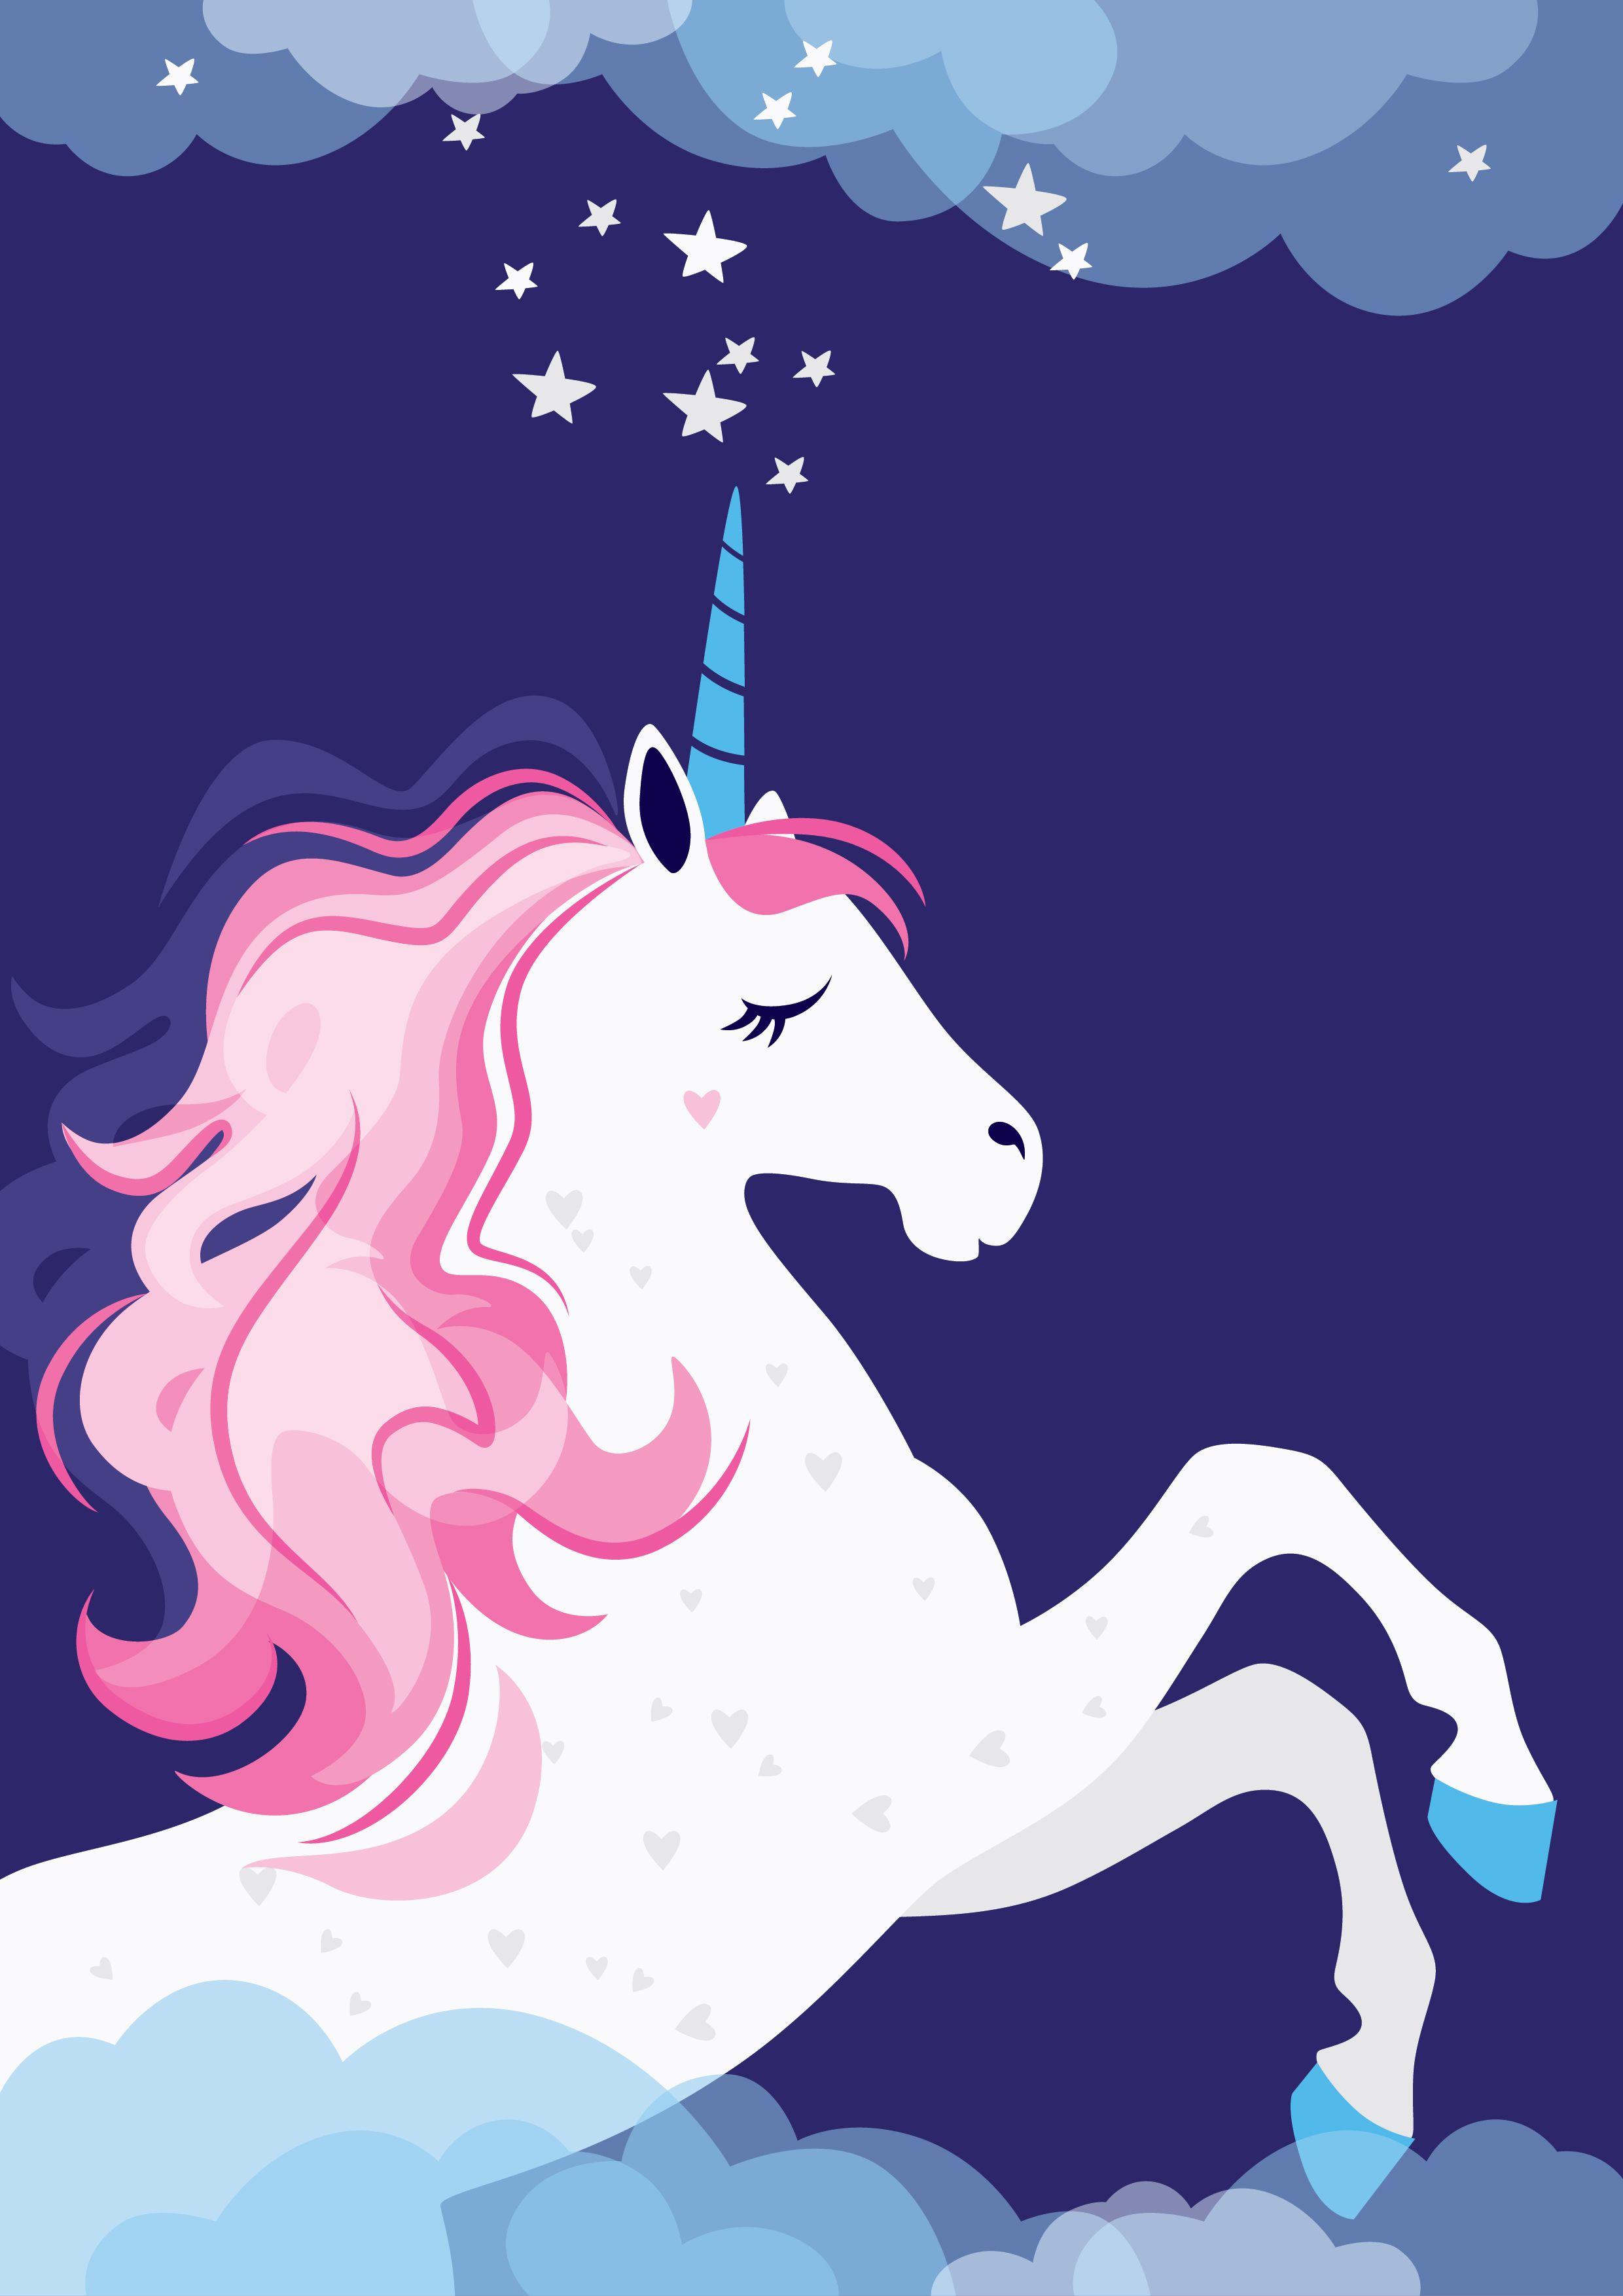 unicorn #festivalposter #poster design #pink #kids #girl